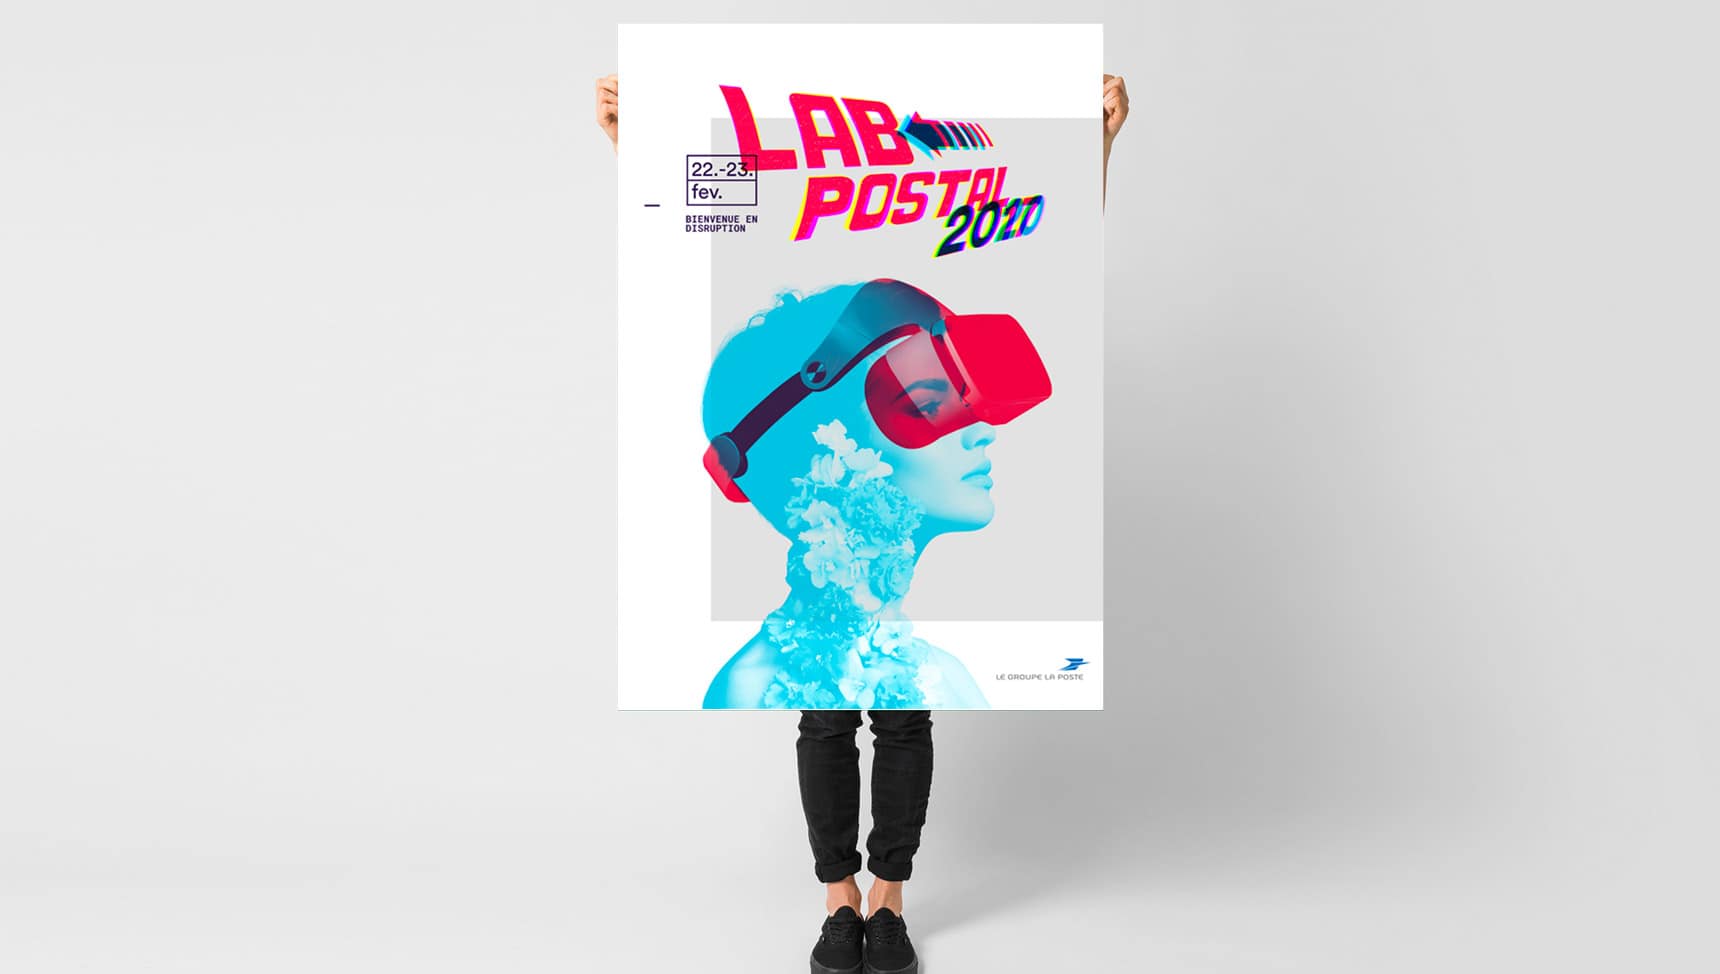 Affiche du Lab Postal 2017